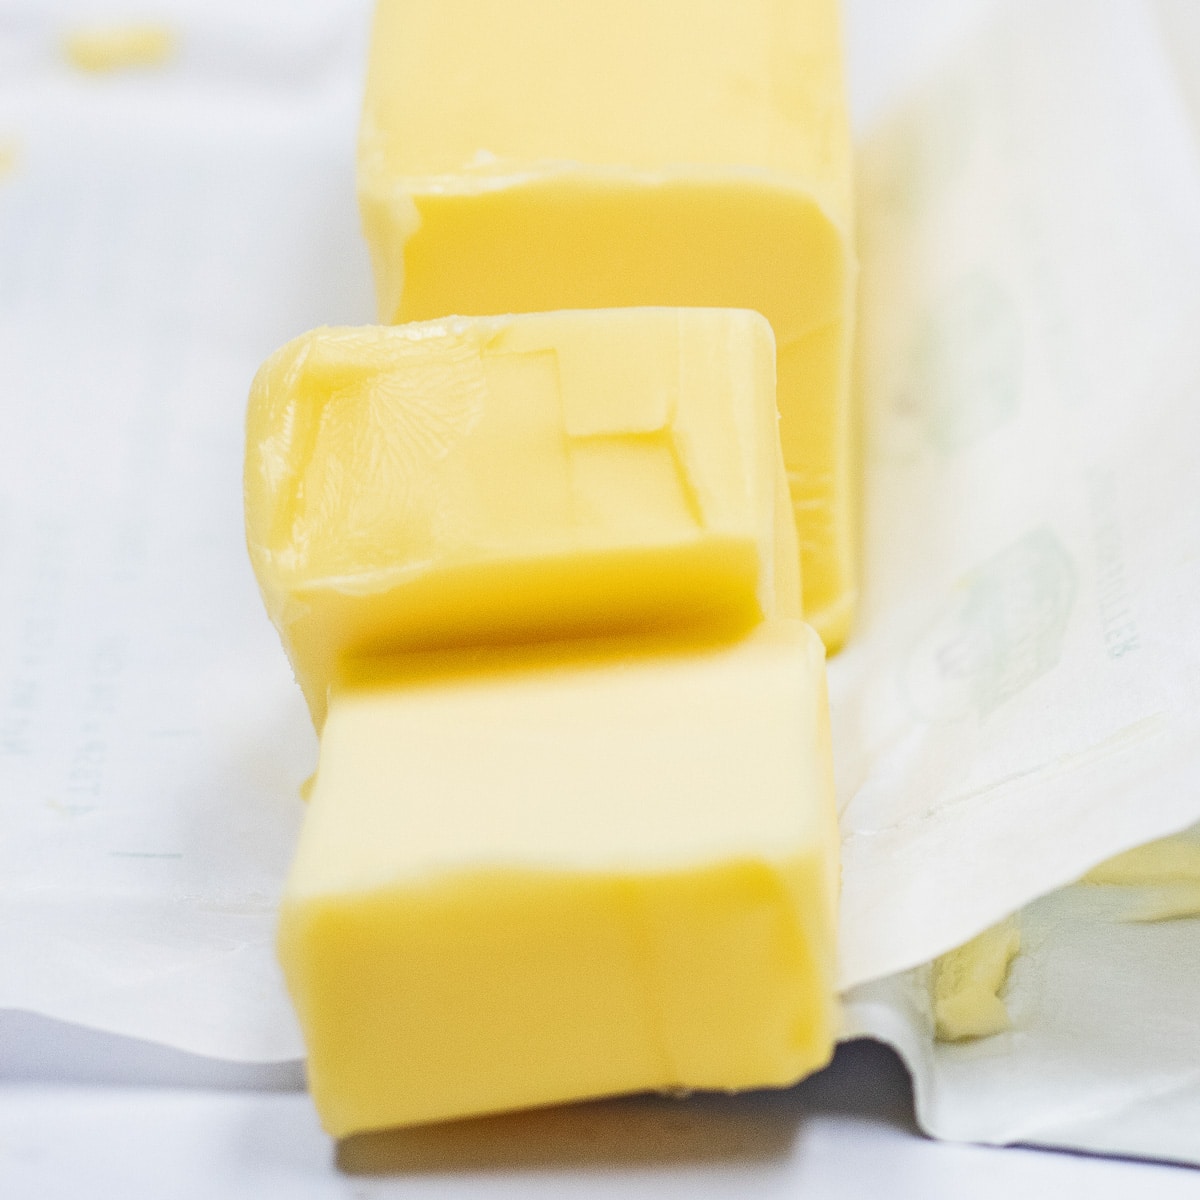 Najbolje mogućnosti zamjene za maslac za zamjenu narezanog europskog maslaca prikazanog ovdje.